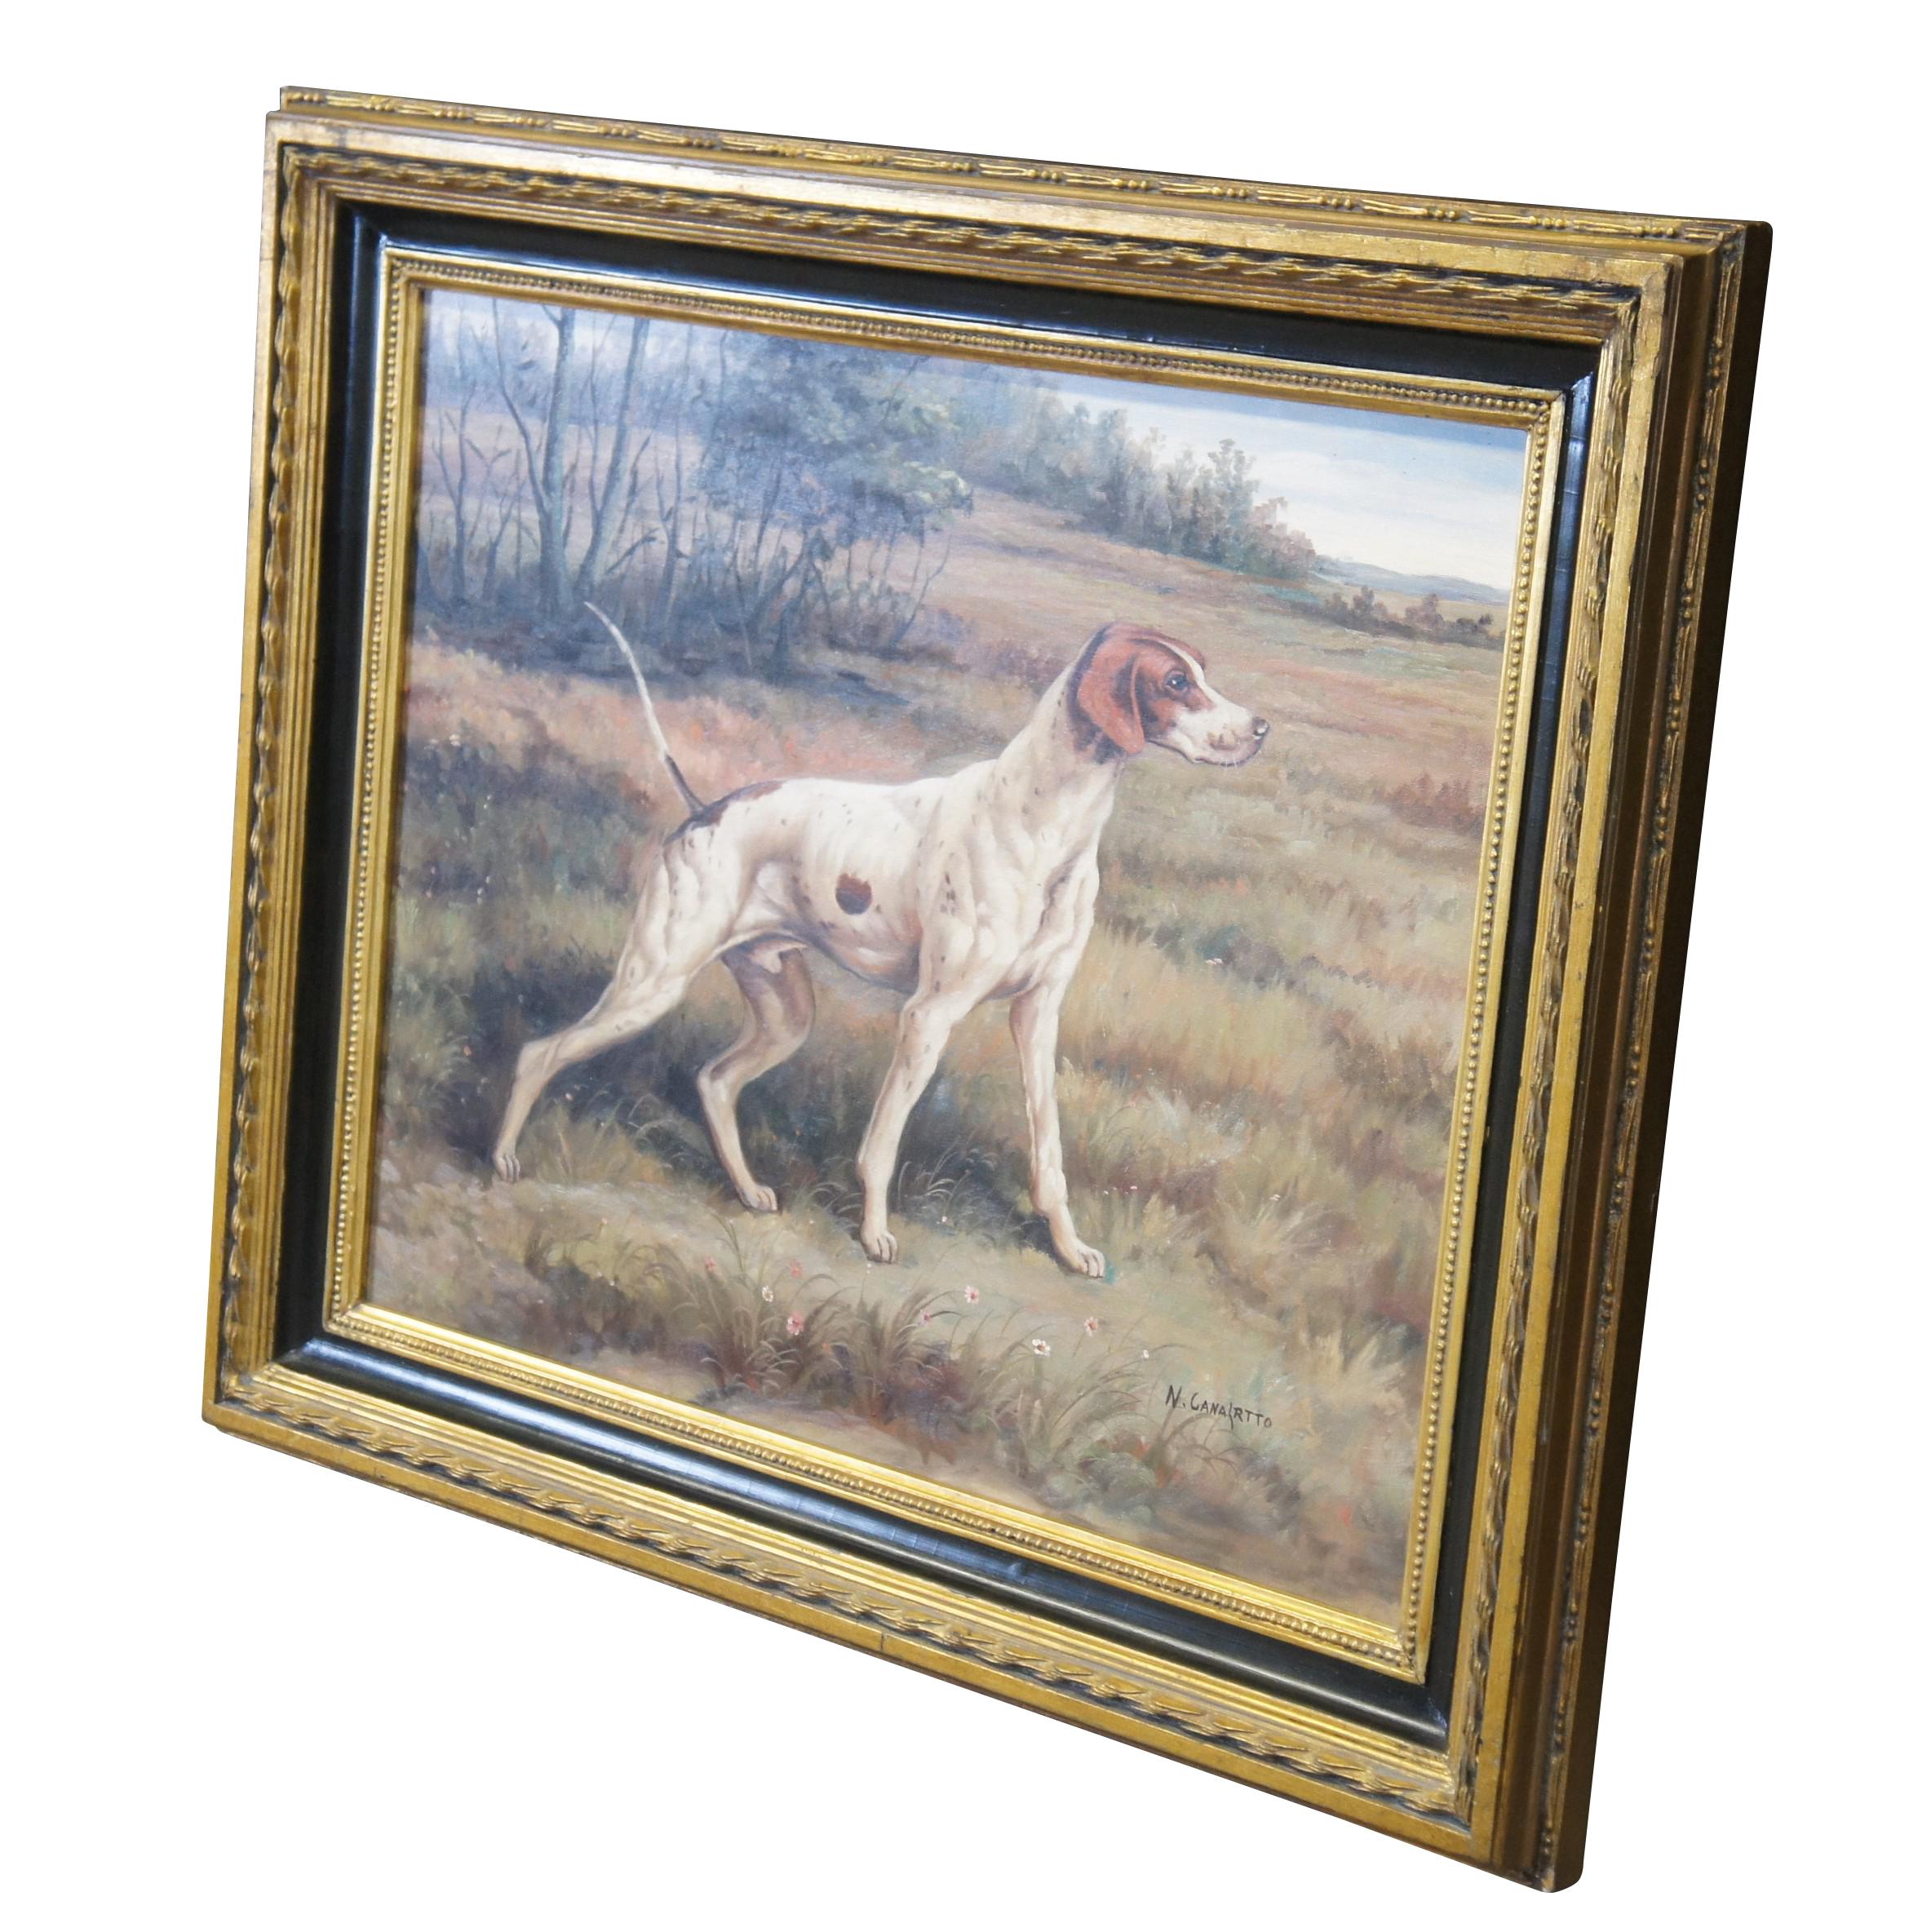 Peinture à l'huile vintage sur toile représentant le portrait d'un chien de chasse à l'arrêt / foxhound dans le champ / la campagne.  Signé par l'artiste en bas à droite.  Encadré dans un cadre en or ébonisé.

Dimensions :
26.5